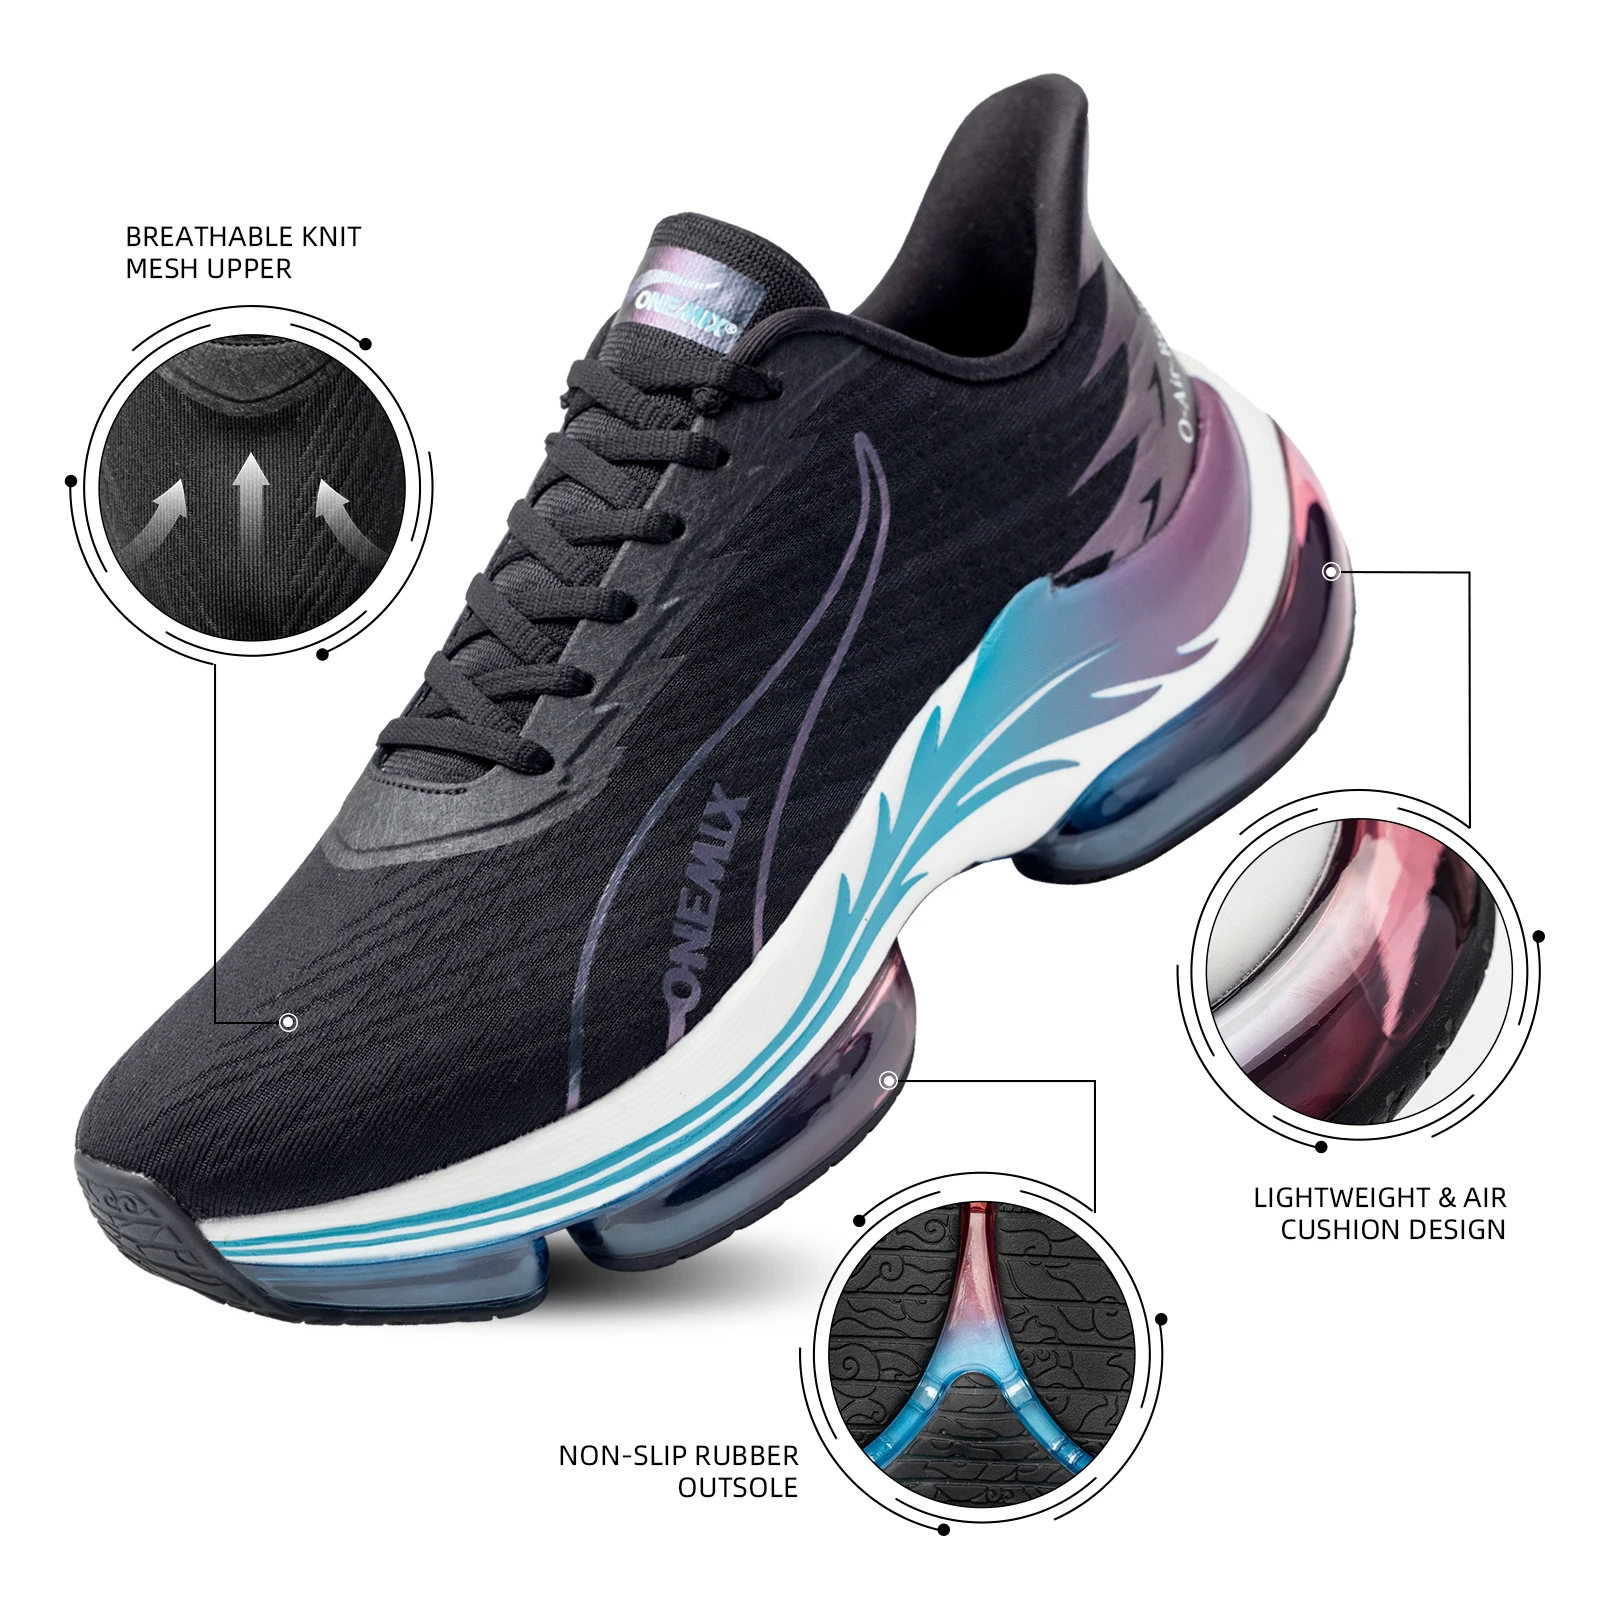 ONEMIX Chaussures de course de sport pour hommes Musique Rhythm Man Sneakers Respirant Mesh Outdoor Athletic Shoe Light Male Chaussures de marche Taille EU 39-47